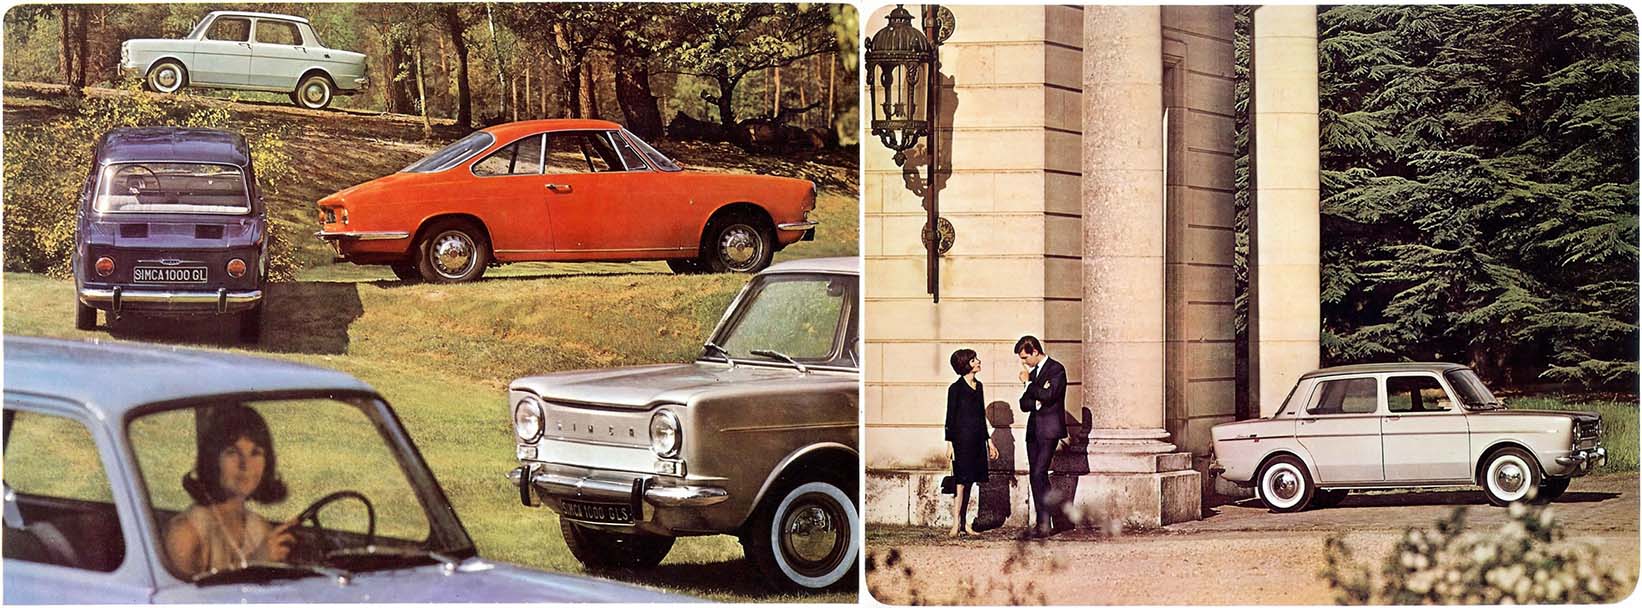 brochure di settembre 1964 che ritrae la Simca 1000 GL e GLS